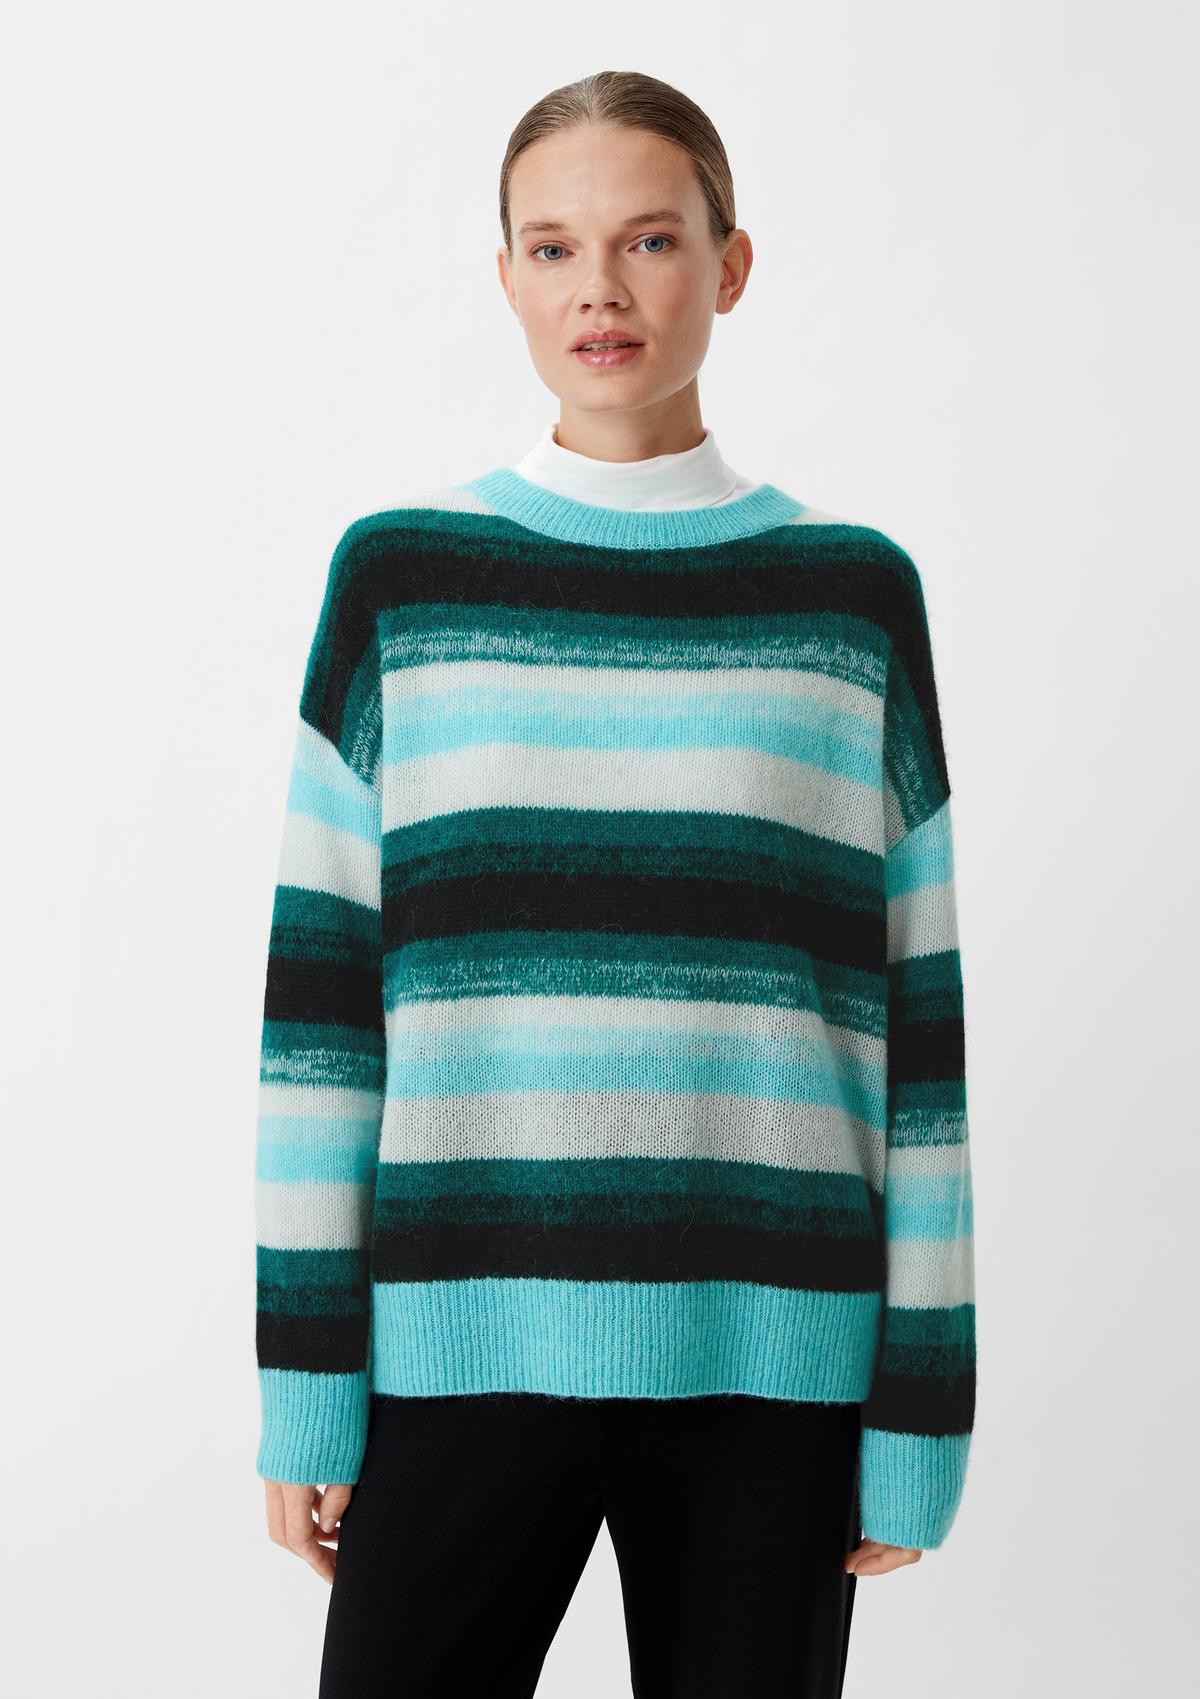 Striped knitted jumper in an alpaca blend